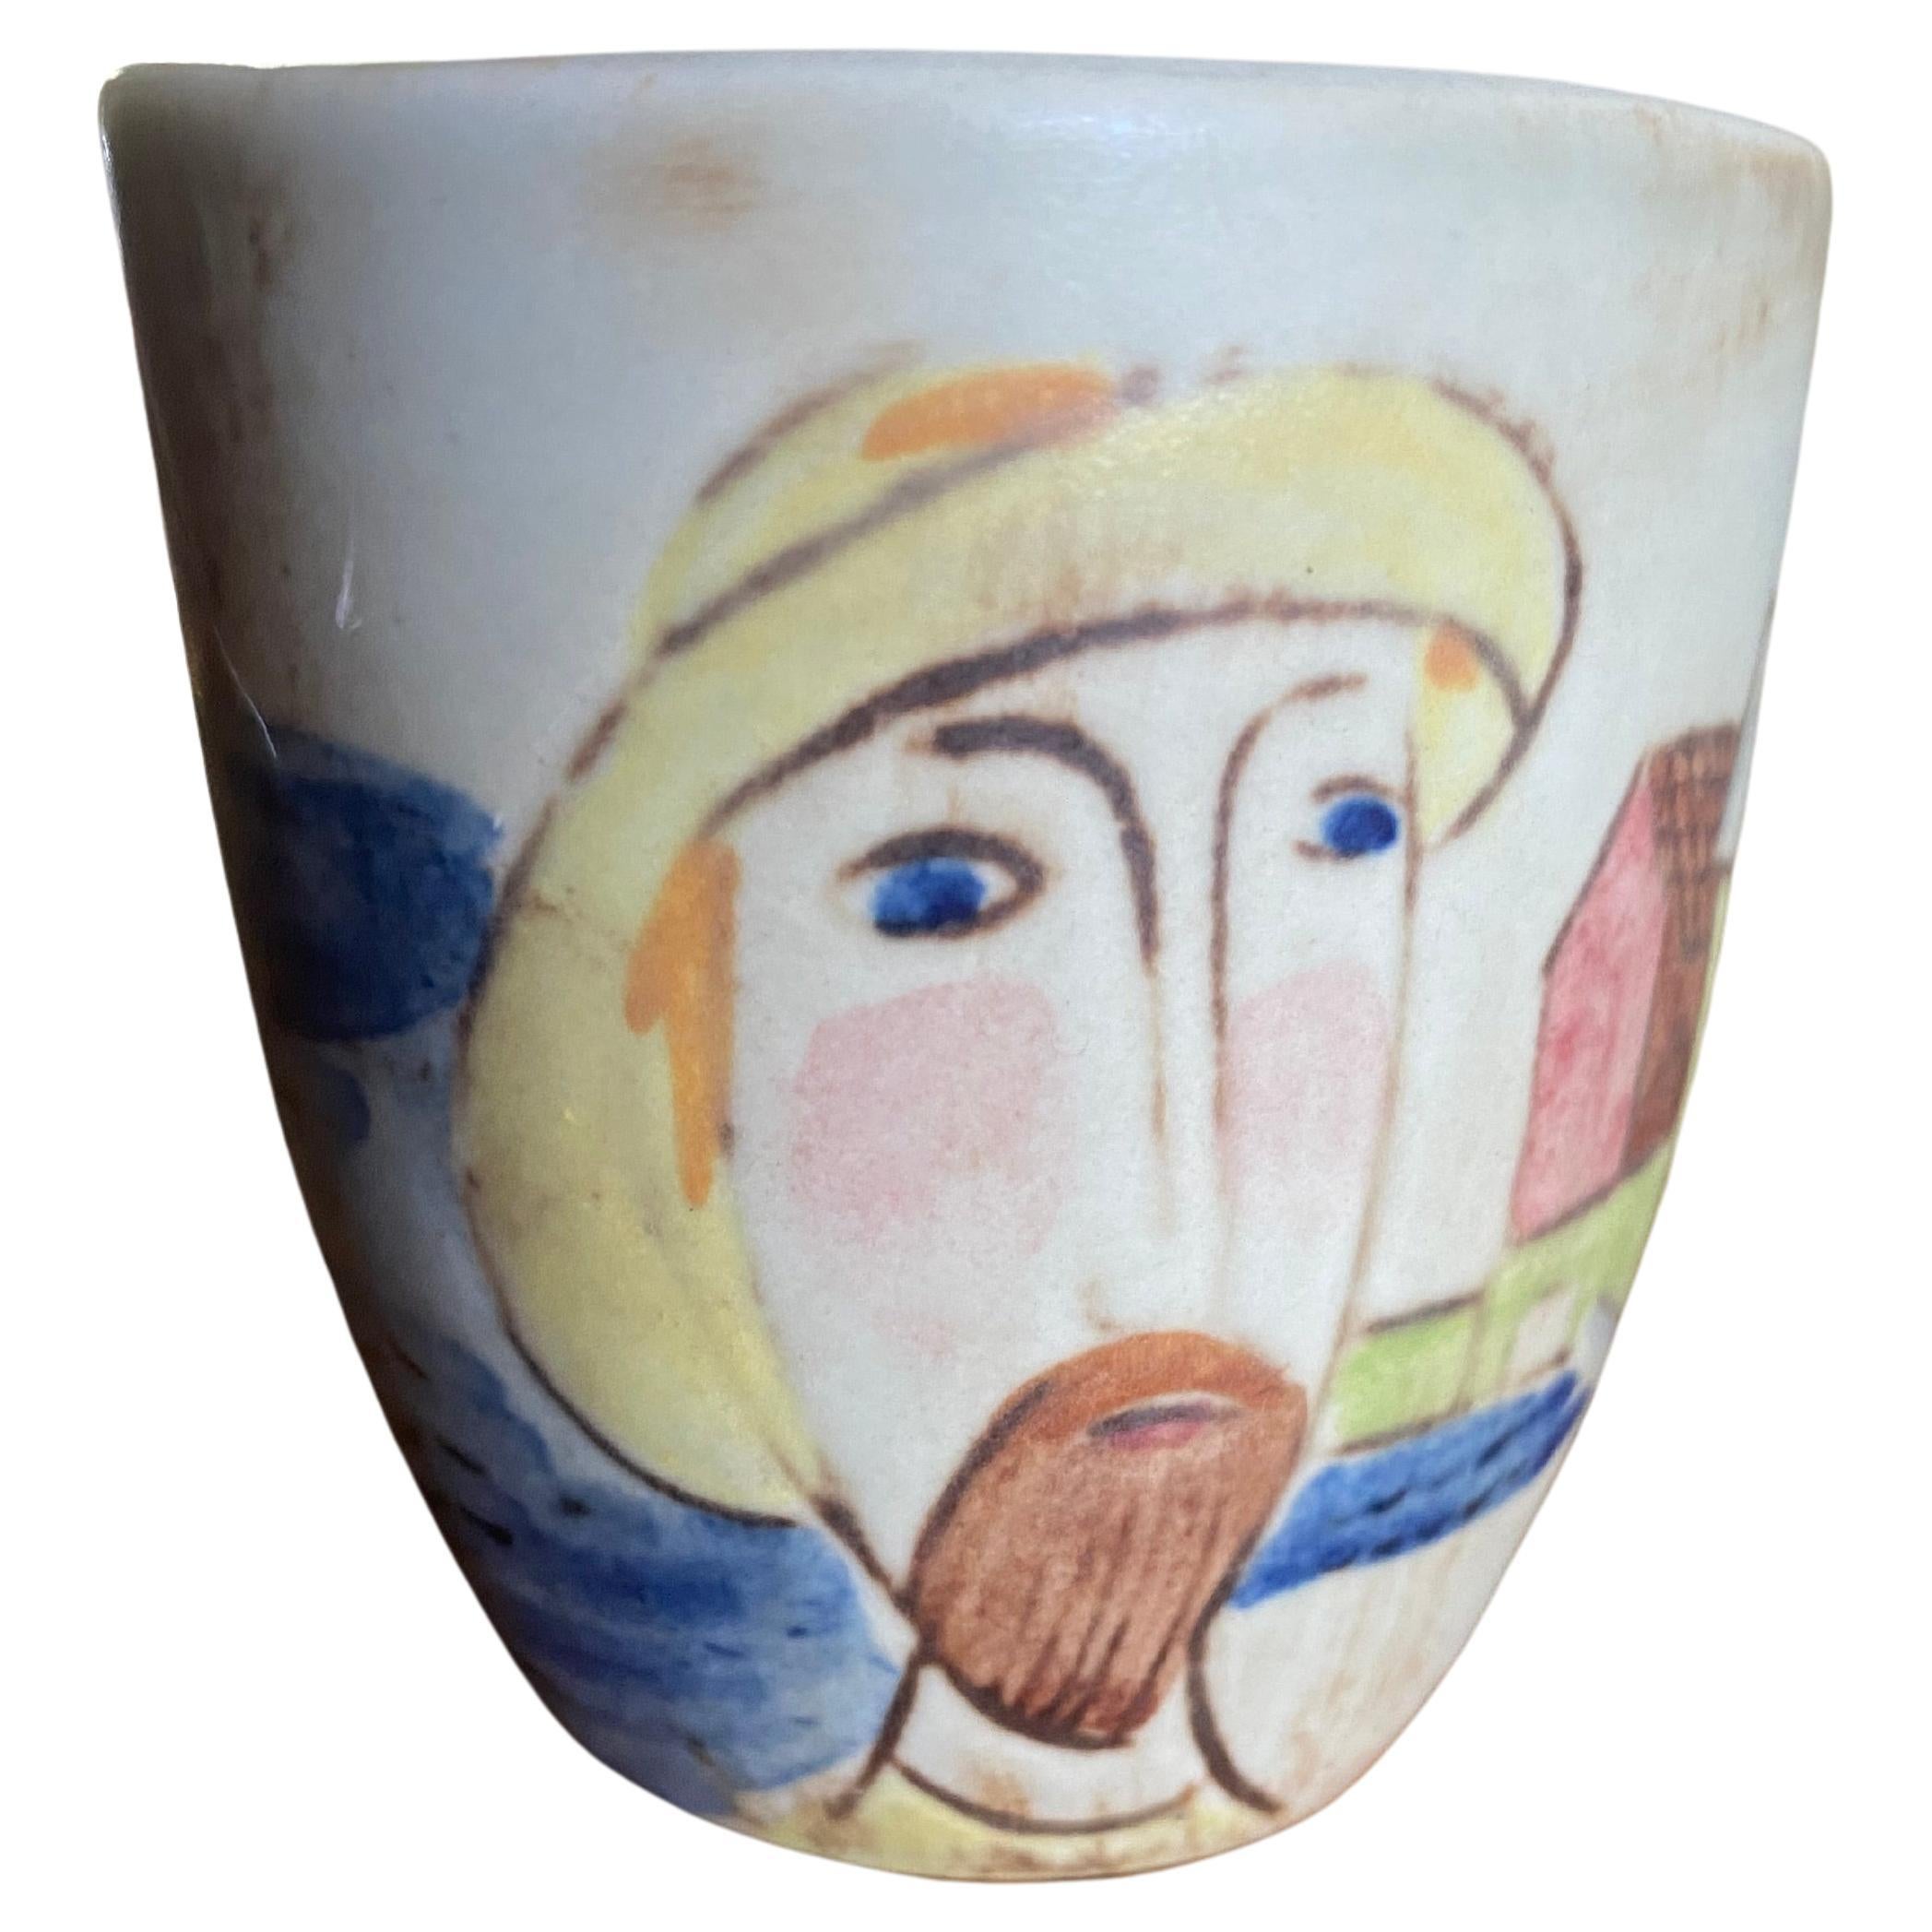 Sehr schöne Miniatur-Vase oder -Schale aus polychromem Steinzeug. In den fünfziger Jahren von Carl Harry Stalhane (1920-1990) für Rorstrand Sweden handbemalt. Auf dem Boden das Logo von Rorstrand und die Initialen von Stalhane.
Das Bild auf der